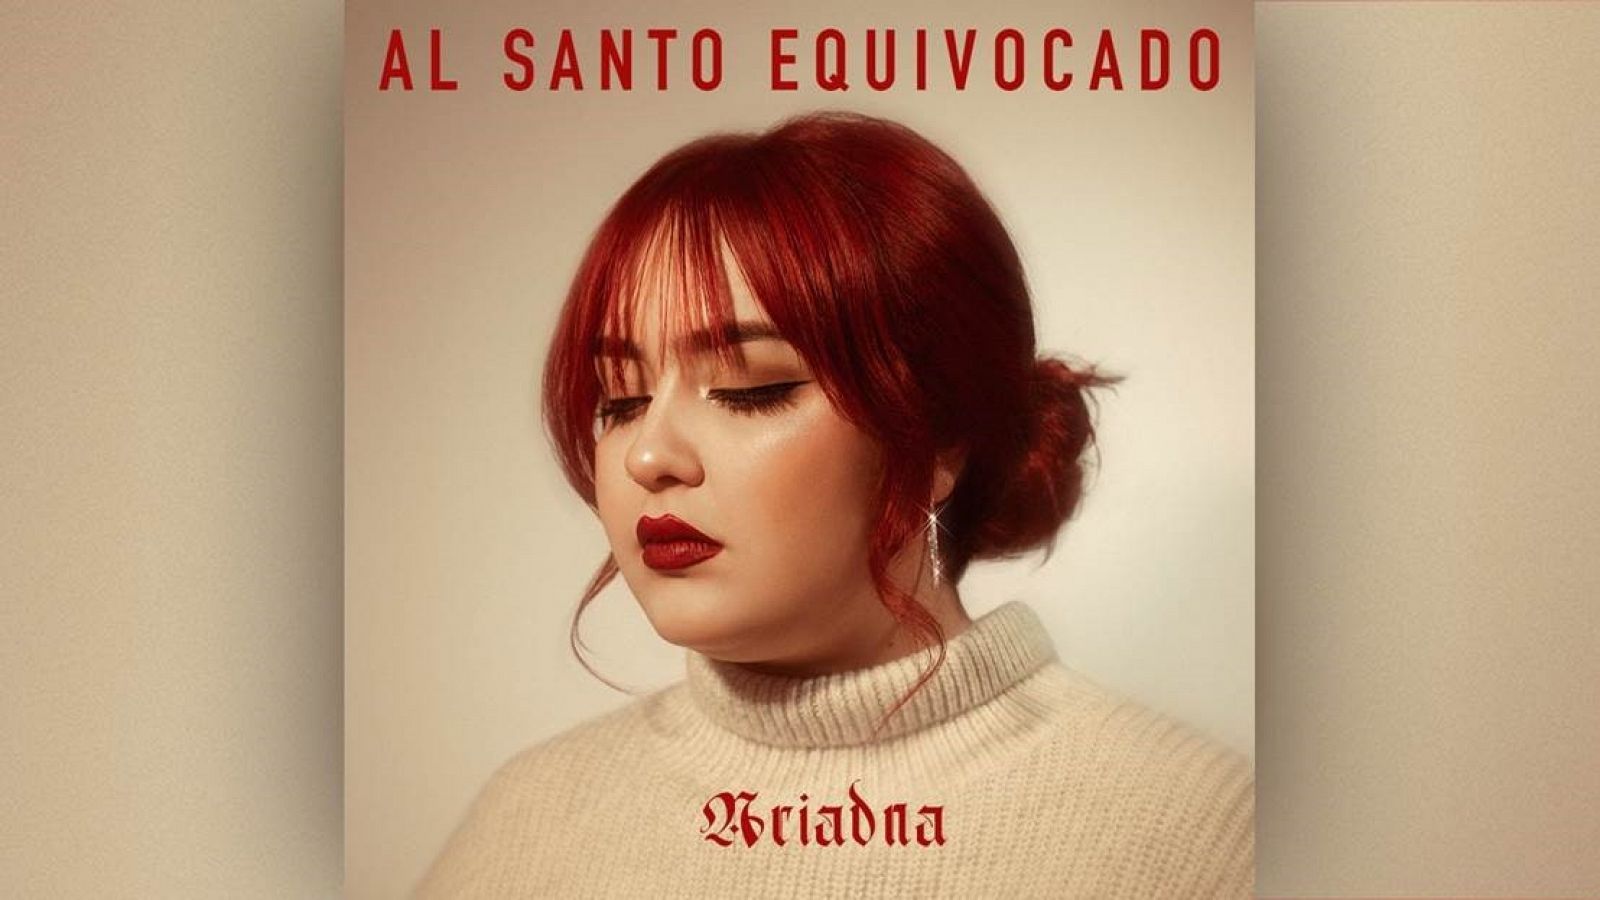 Ariadna presenta su single "Al santo equivocado"